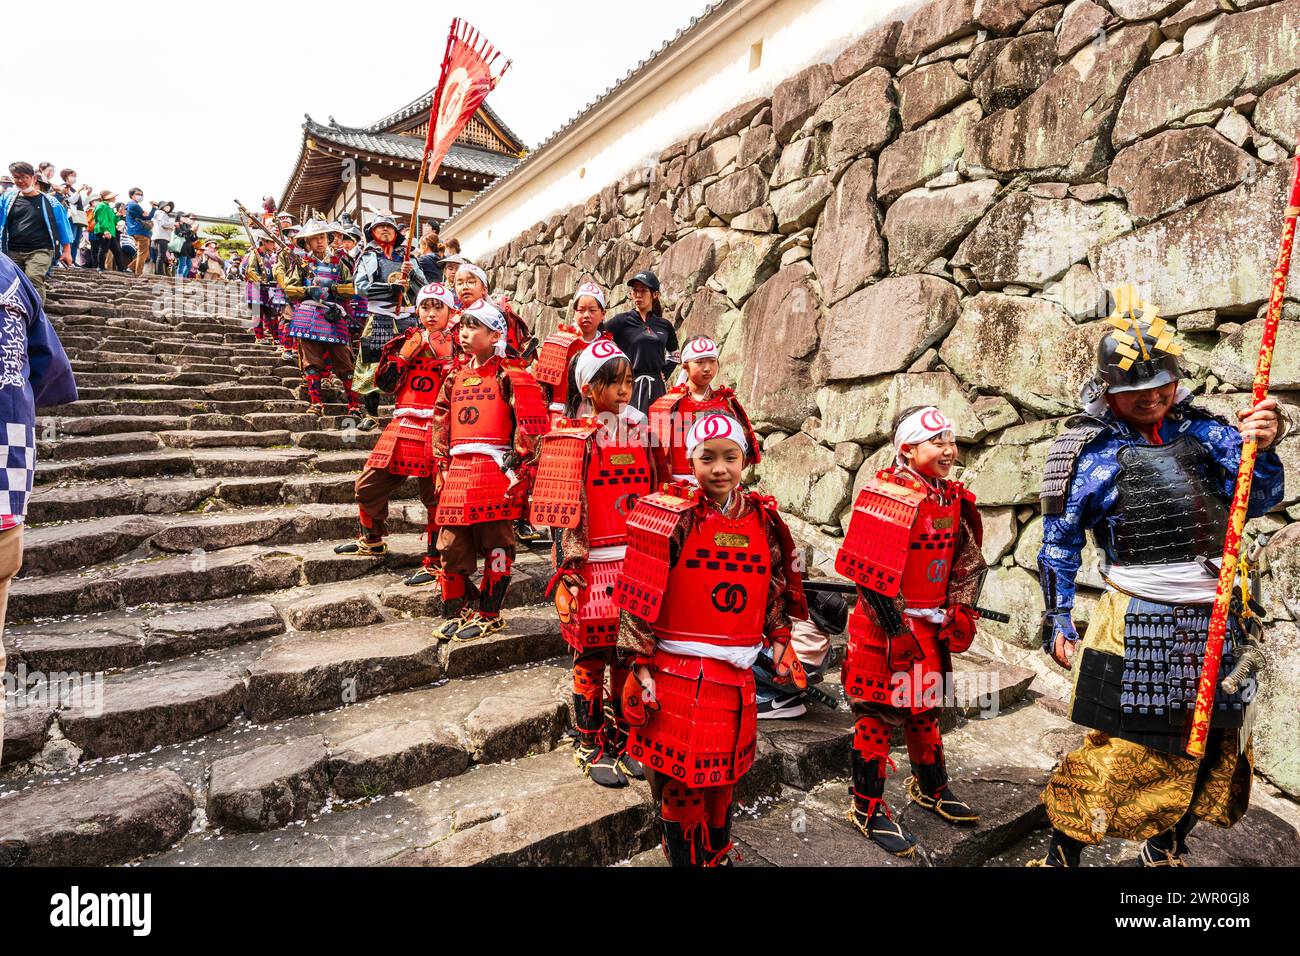 Giovani ragazze giapponesi vestite di armatura rossa come soldati ashigaru in attesa sui gradini del castello di pietra a Tatsuno durante la parata dei samurai in primavera Foto Stock